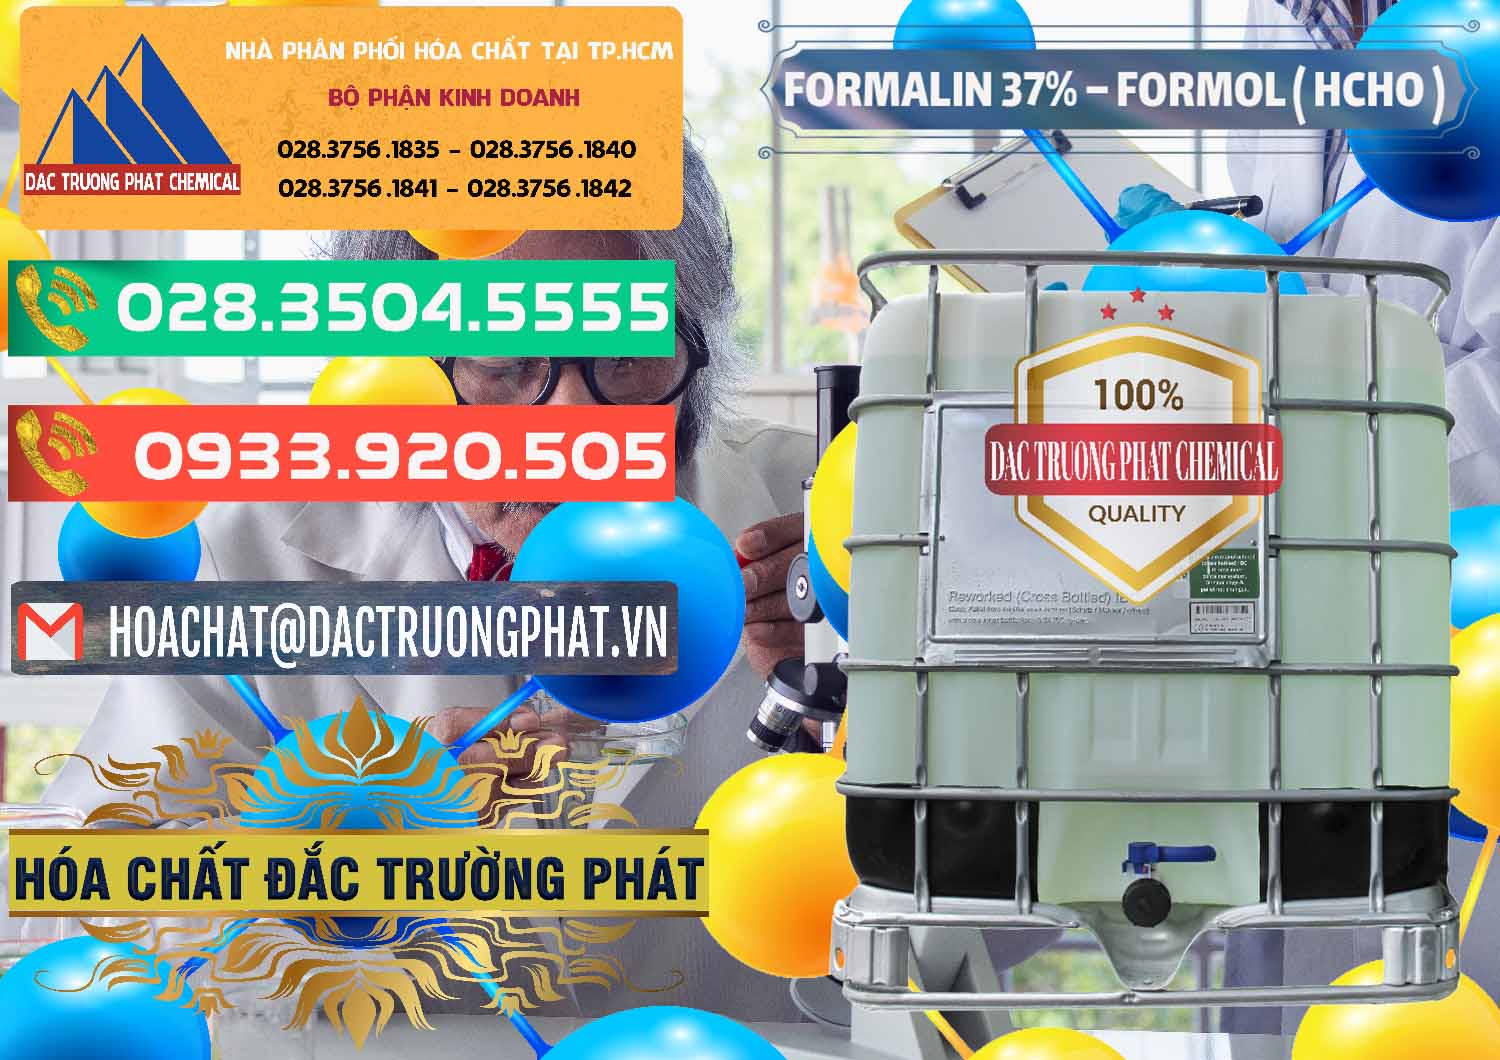 Cung cấp & phân phối Formalin - Formol ( HCHO ) 37% Việt Nam - 0187 - Công ty cung cấp _ kinh doanh hóa chất tại TP.HCM - congtyhoachat.com.vn